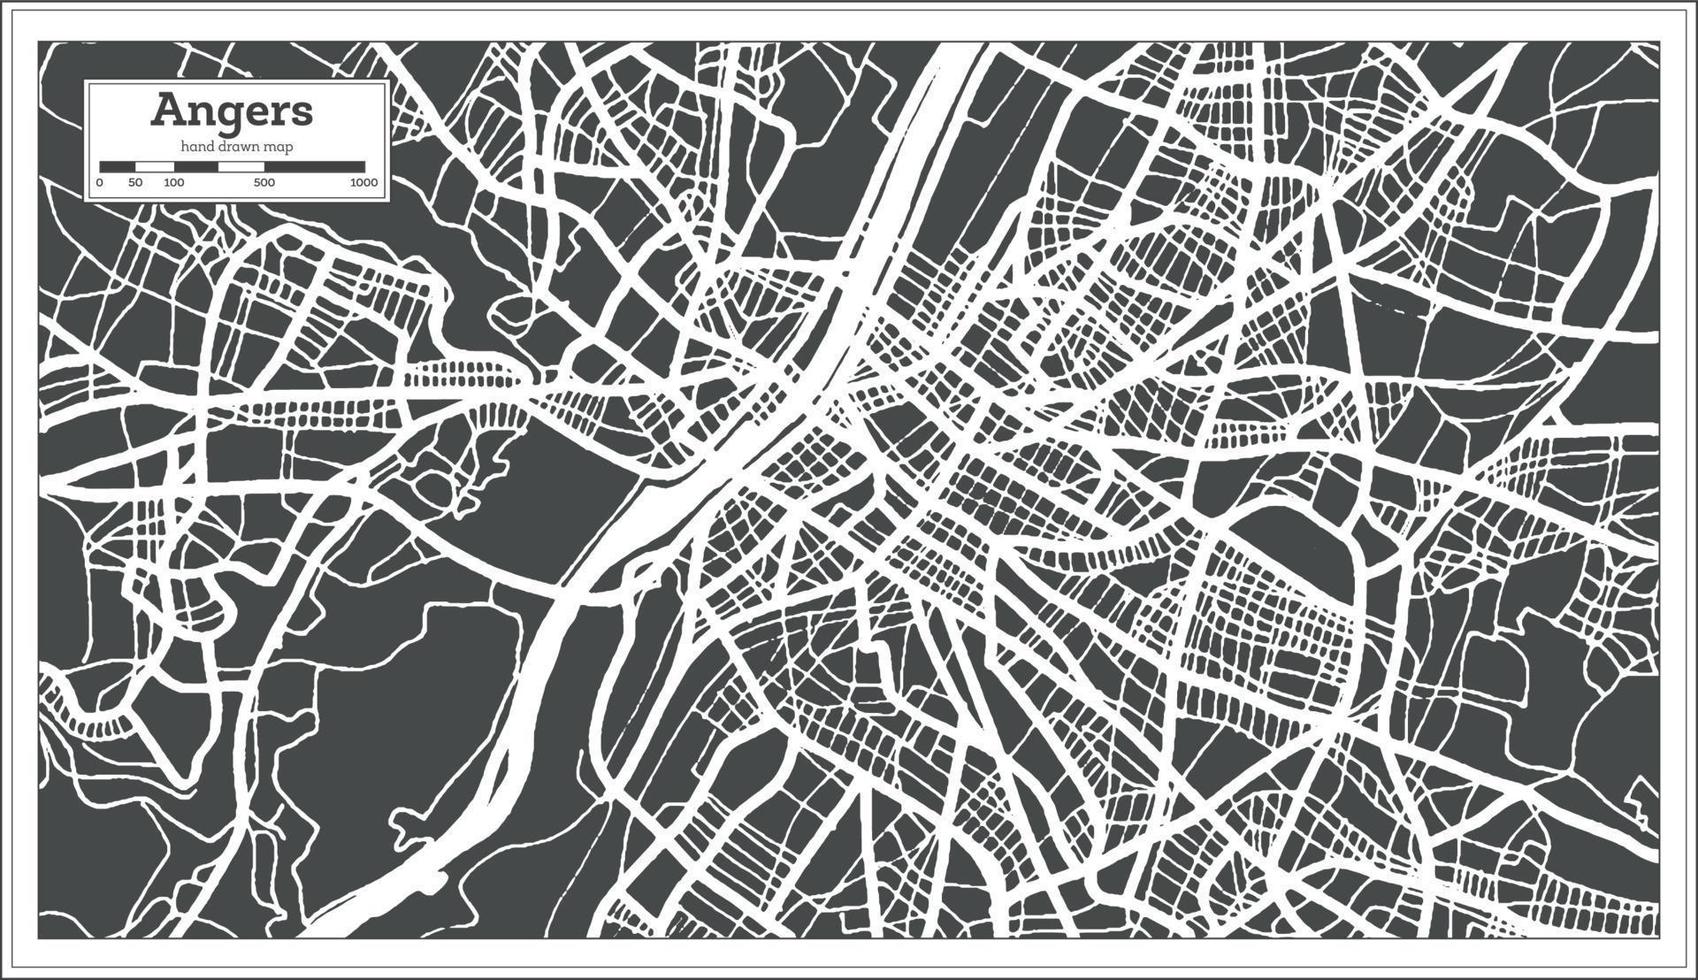 boos maken Frankrijk stad kaart in retro stijl. schets kaart. vector illustratie.